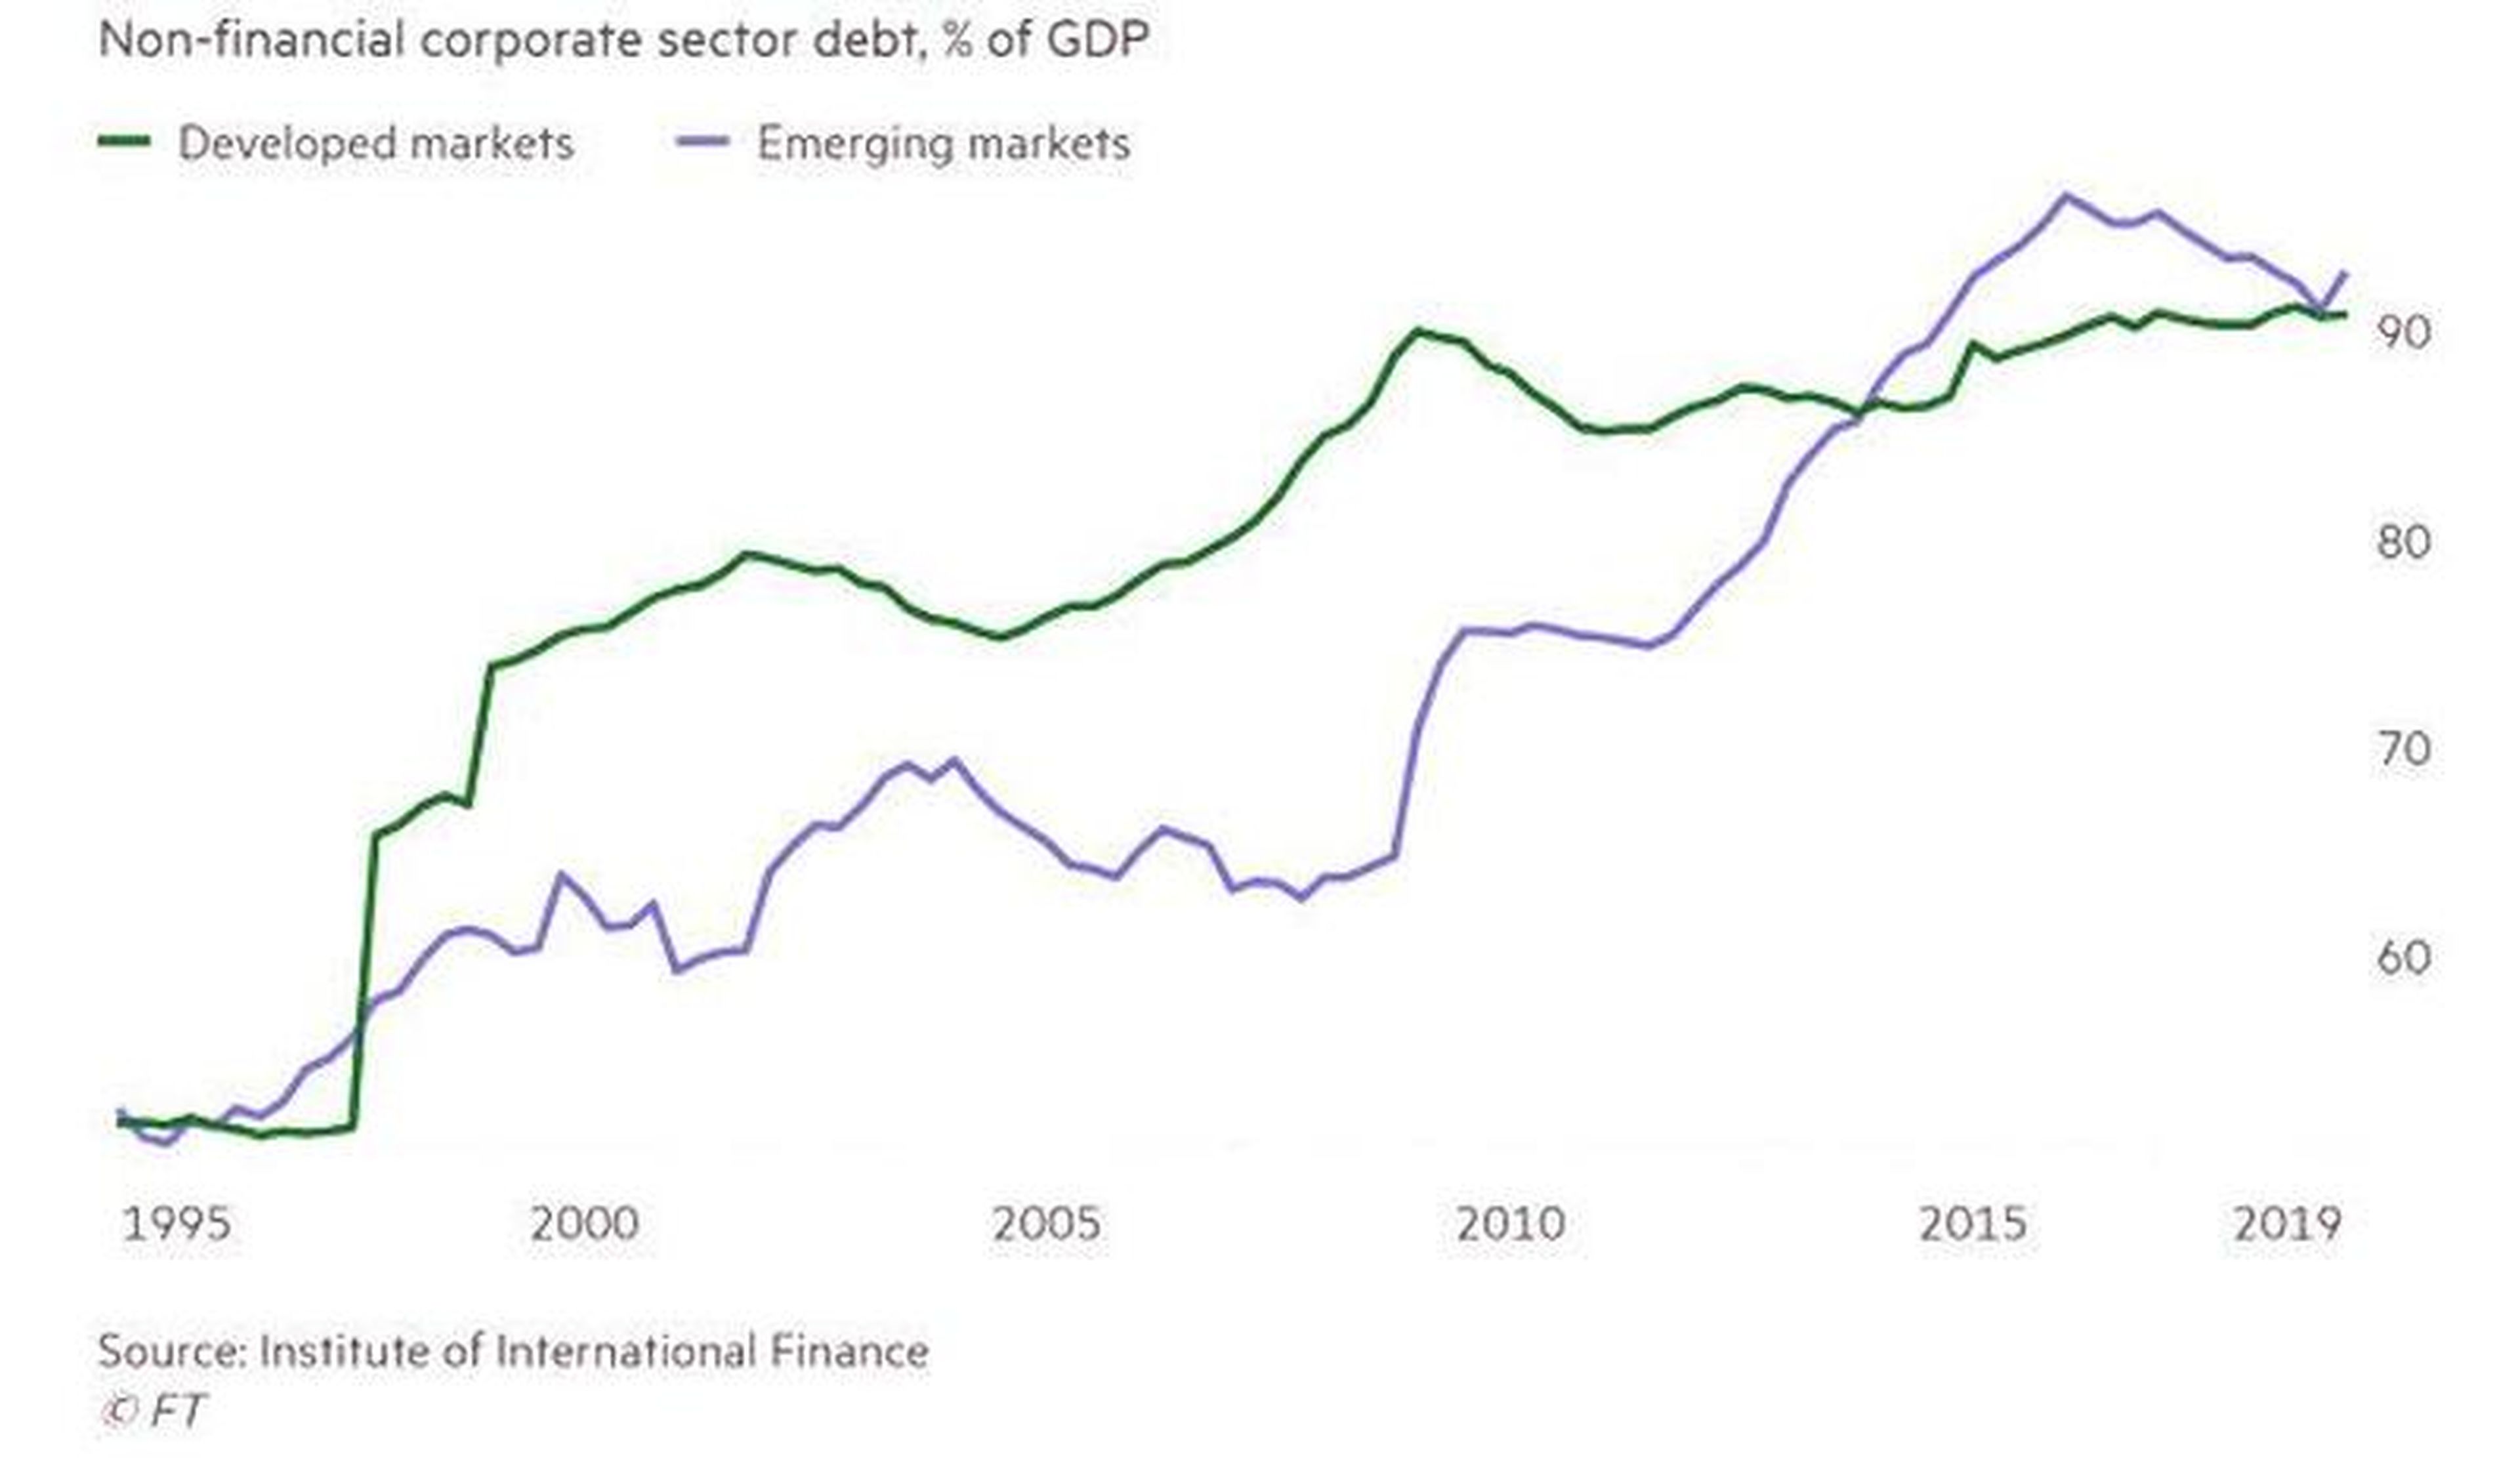 Evolución de la deuda corporativa no financiera